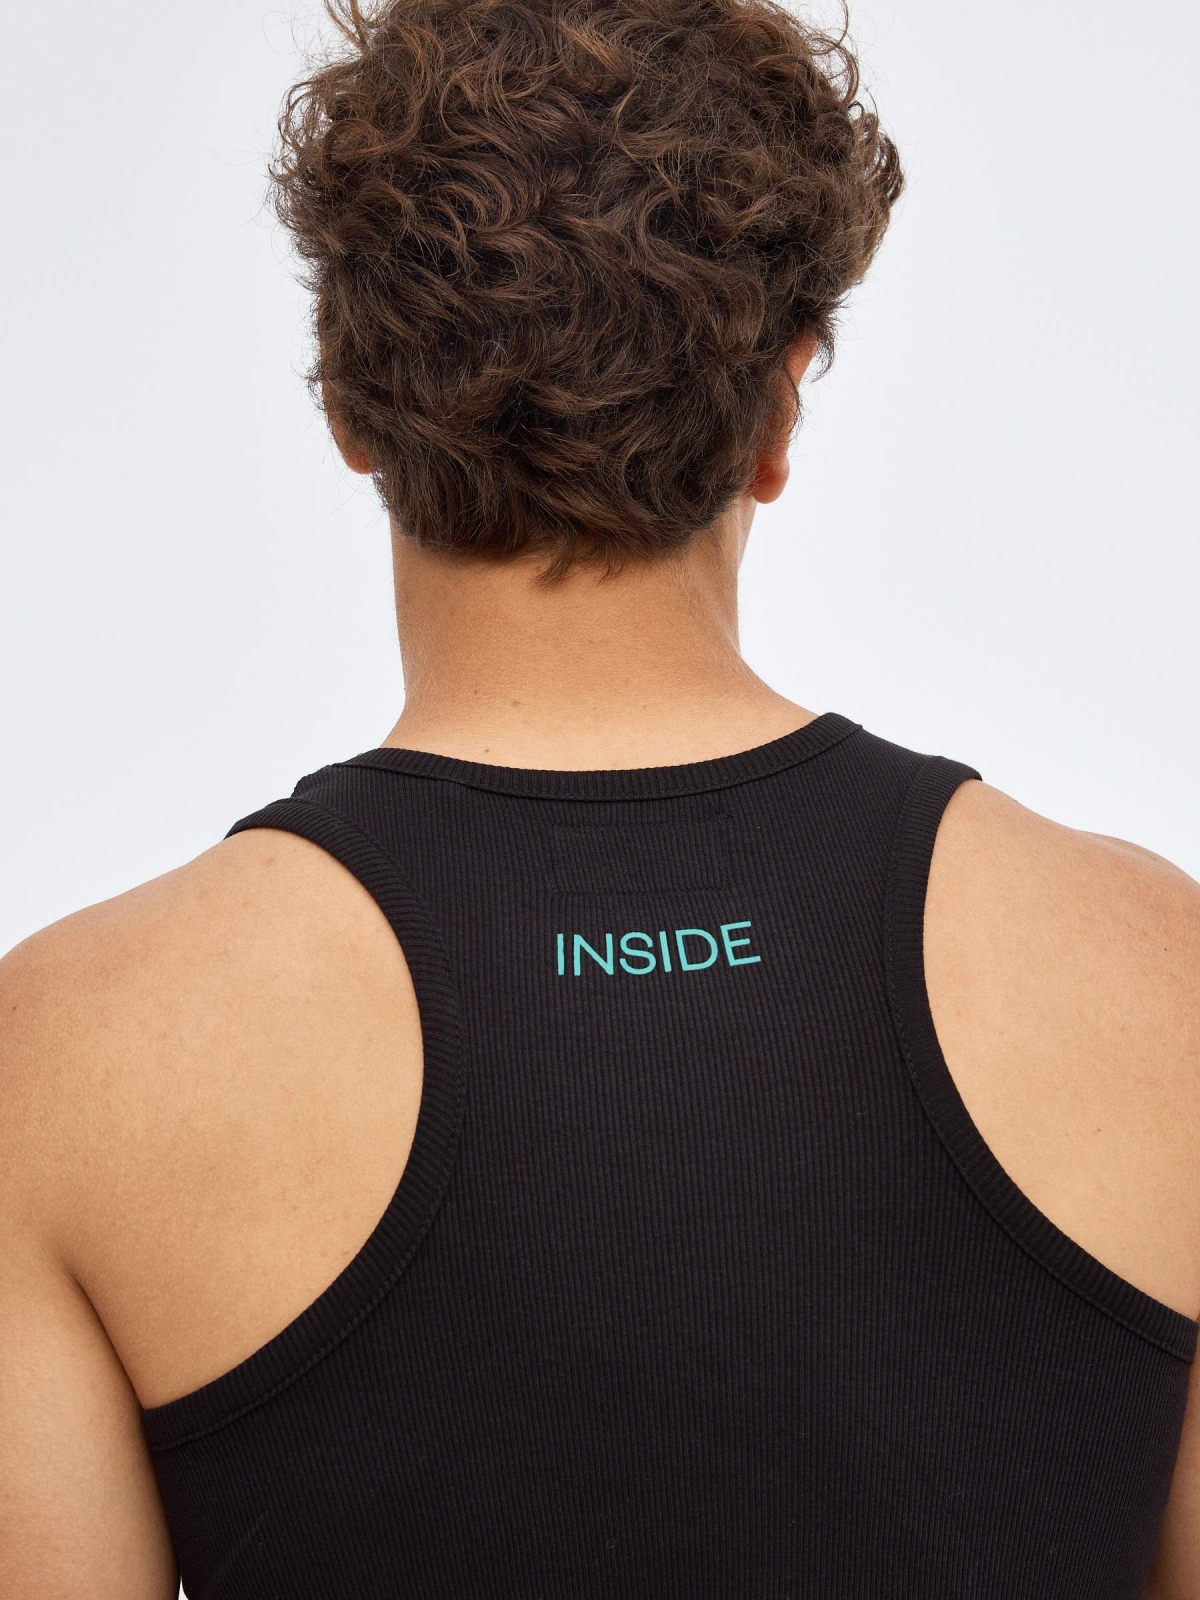 T-shirt básica com nas costas nadadora preto vista detalhe